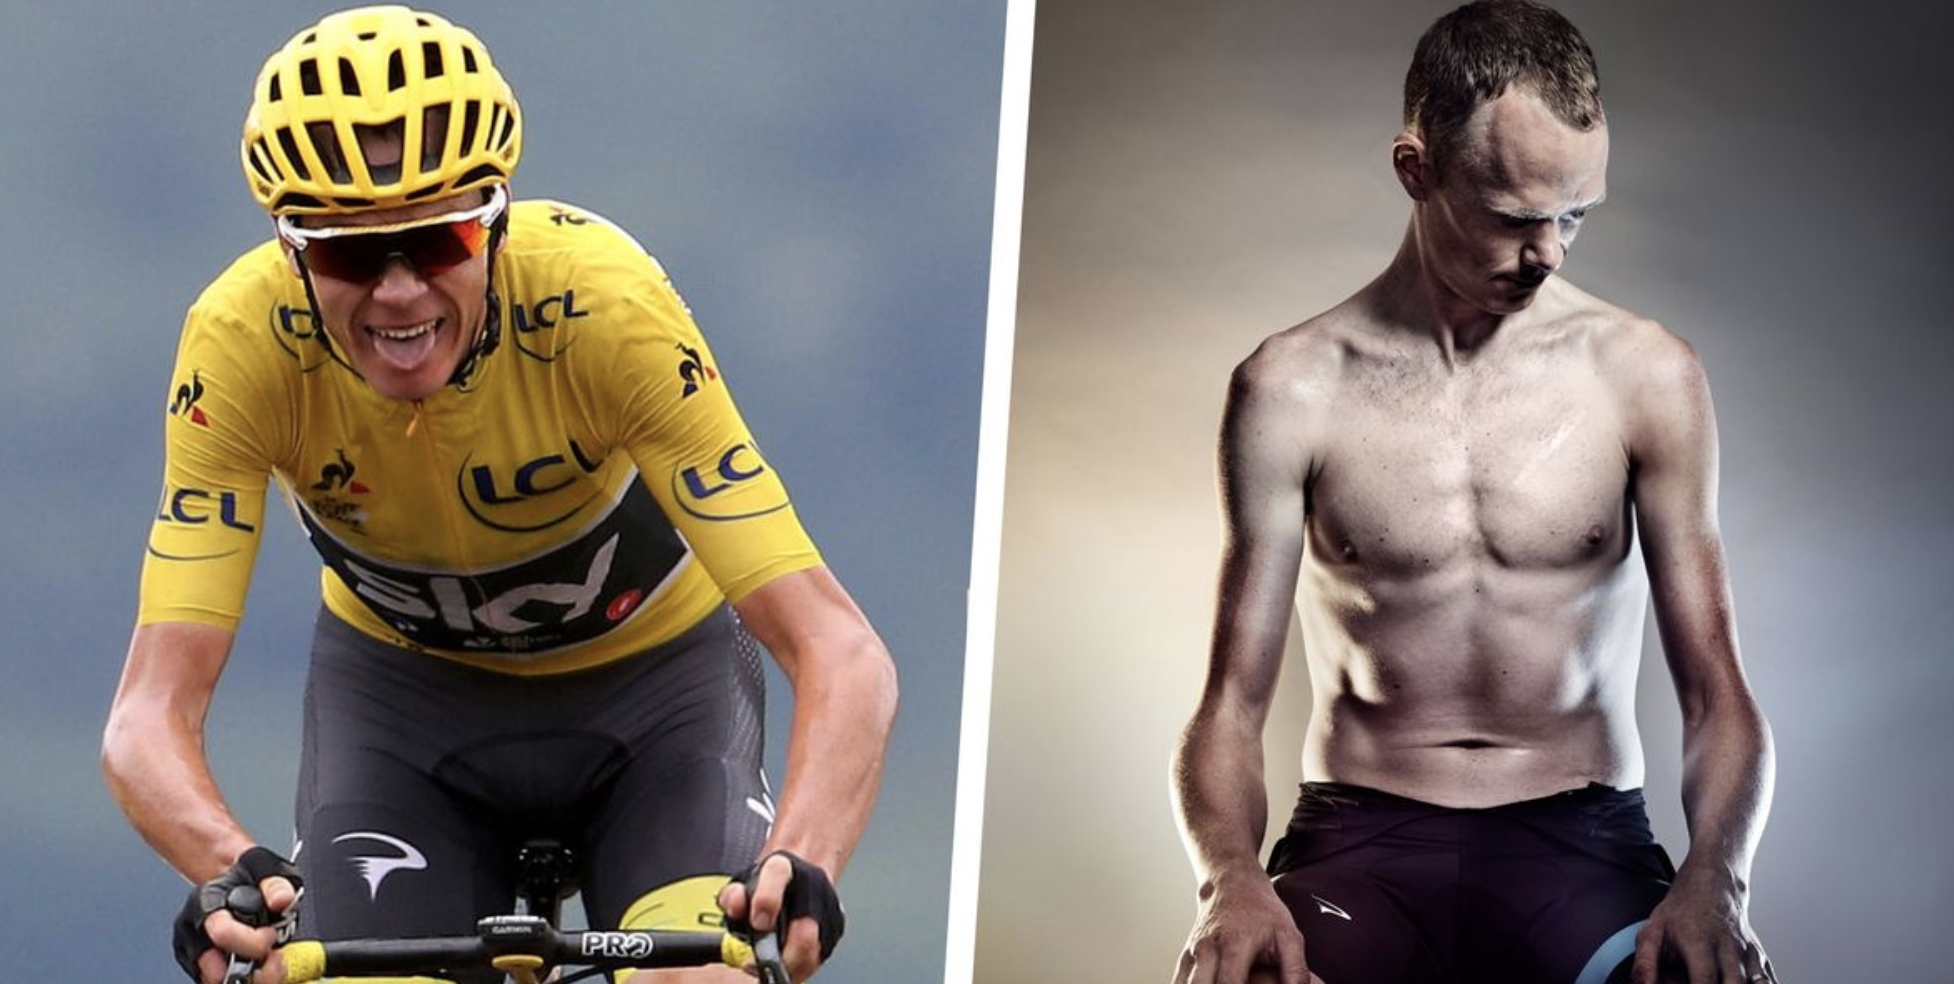 La increíble transformación de Chris - Vuelta al ciclismo